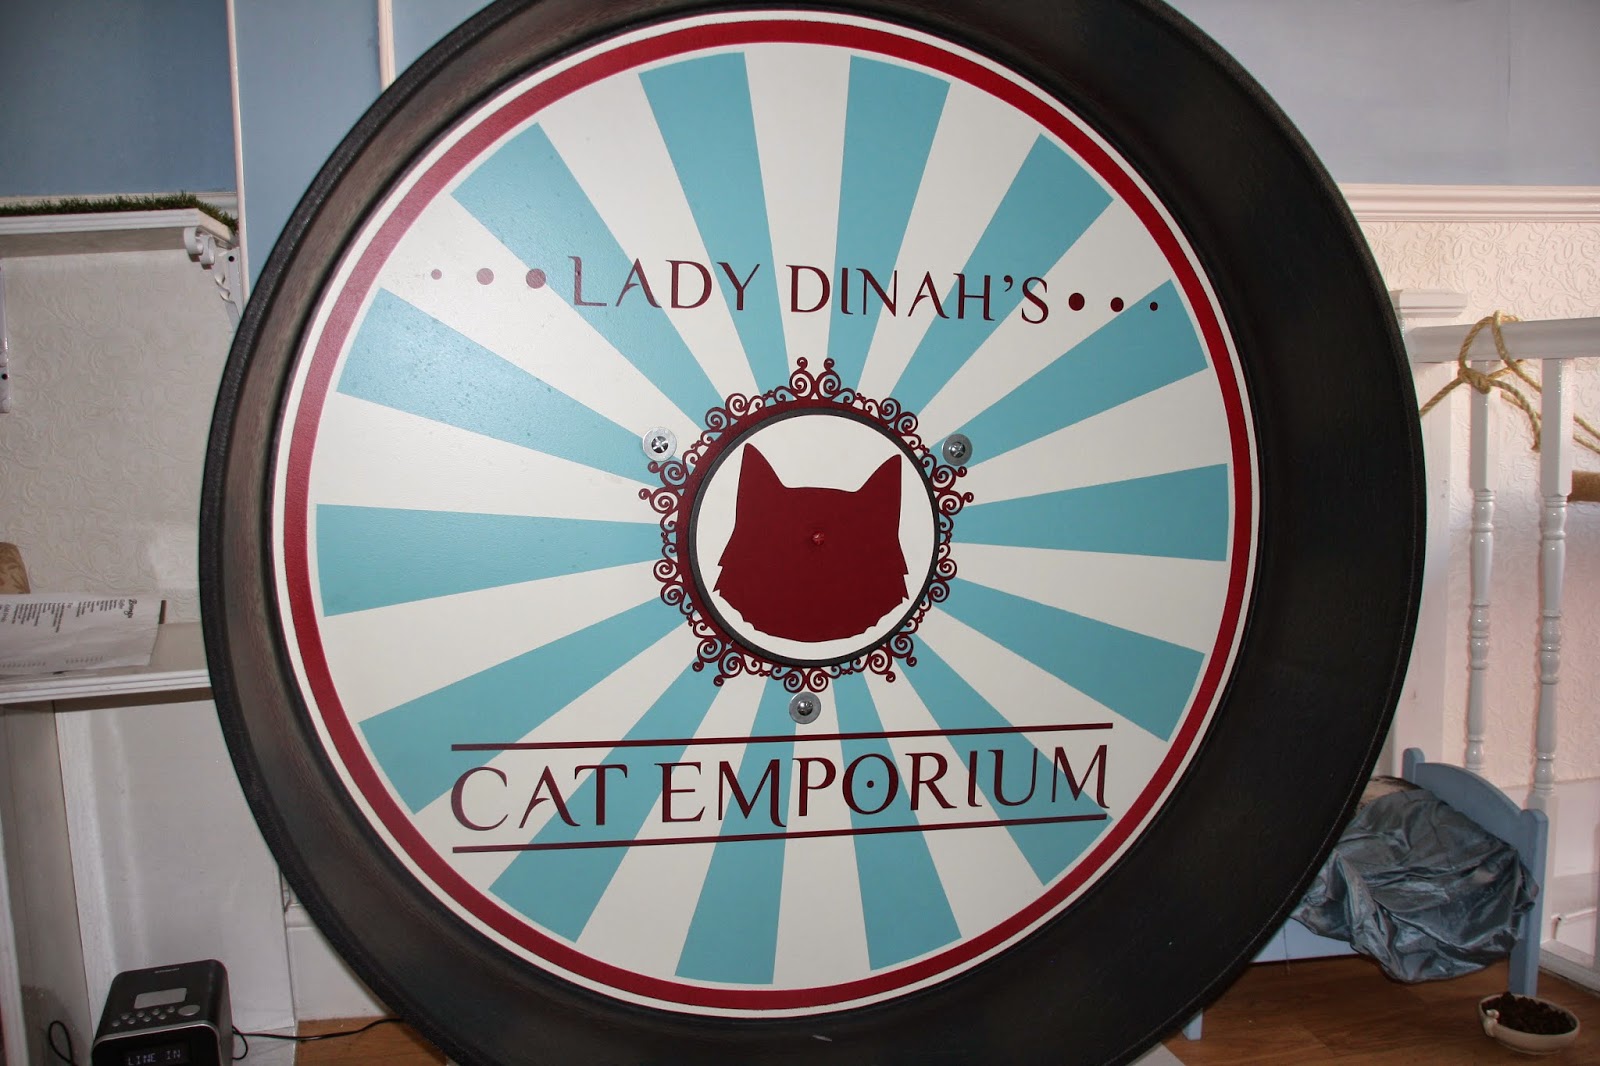 Lady Dinah's cat emporium